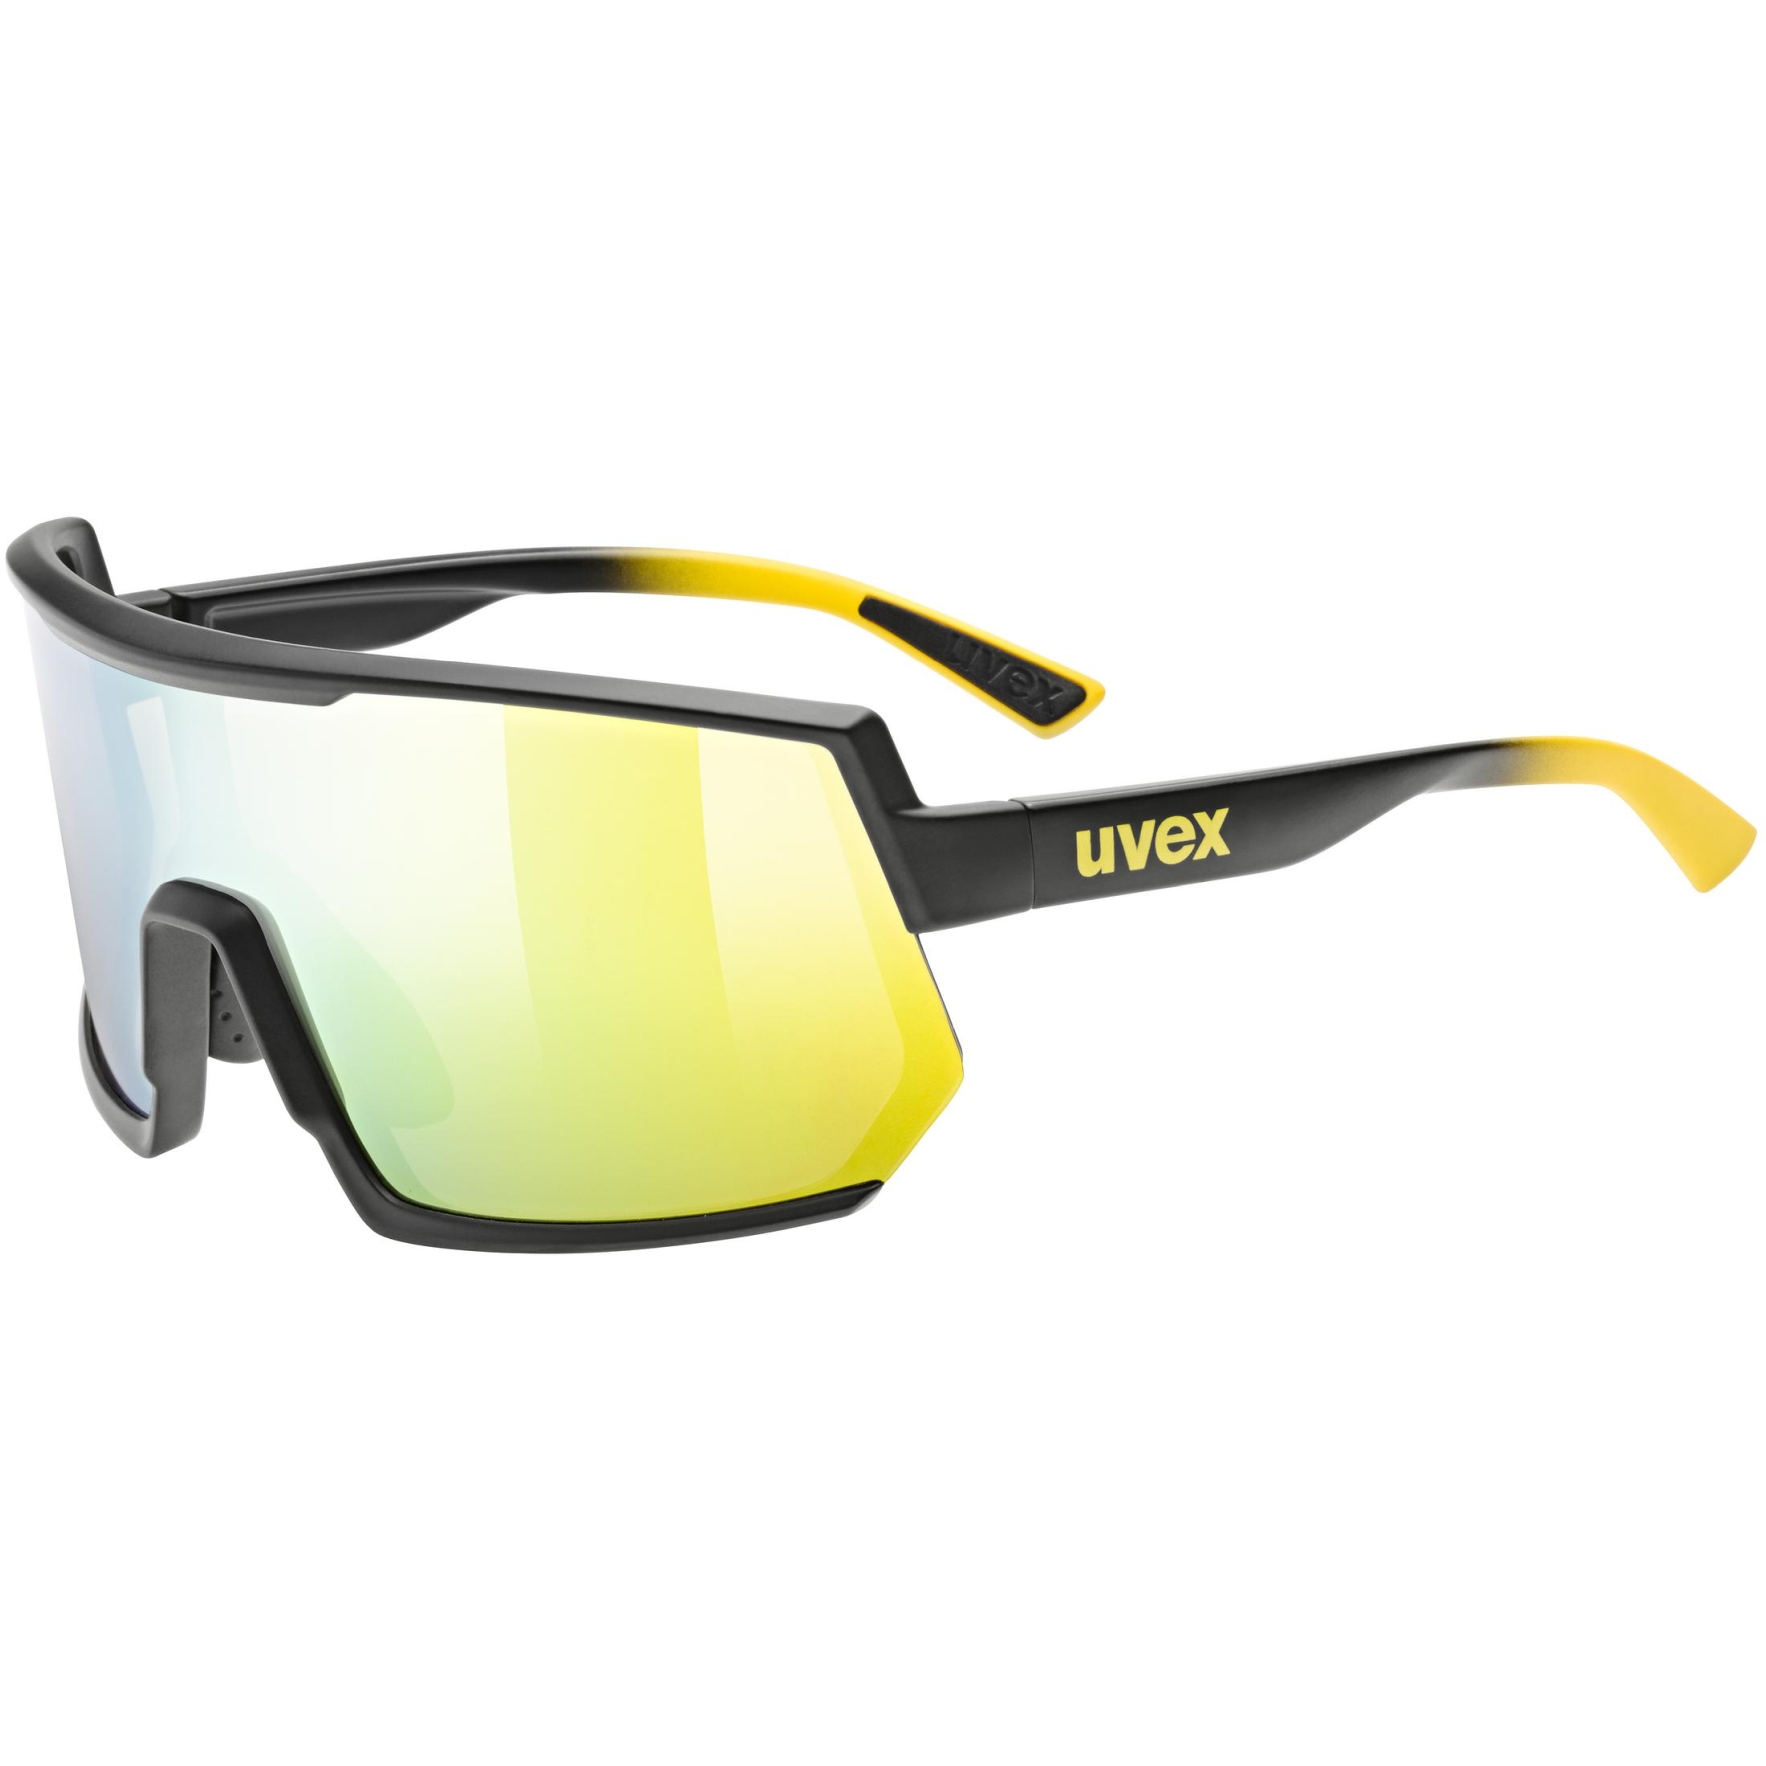 Produktbild von Uvex sportstyle 235 Brille - sunbee-black matt/supravision mirror yellow